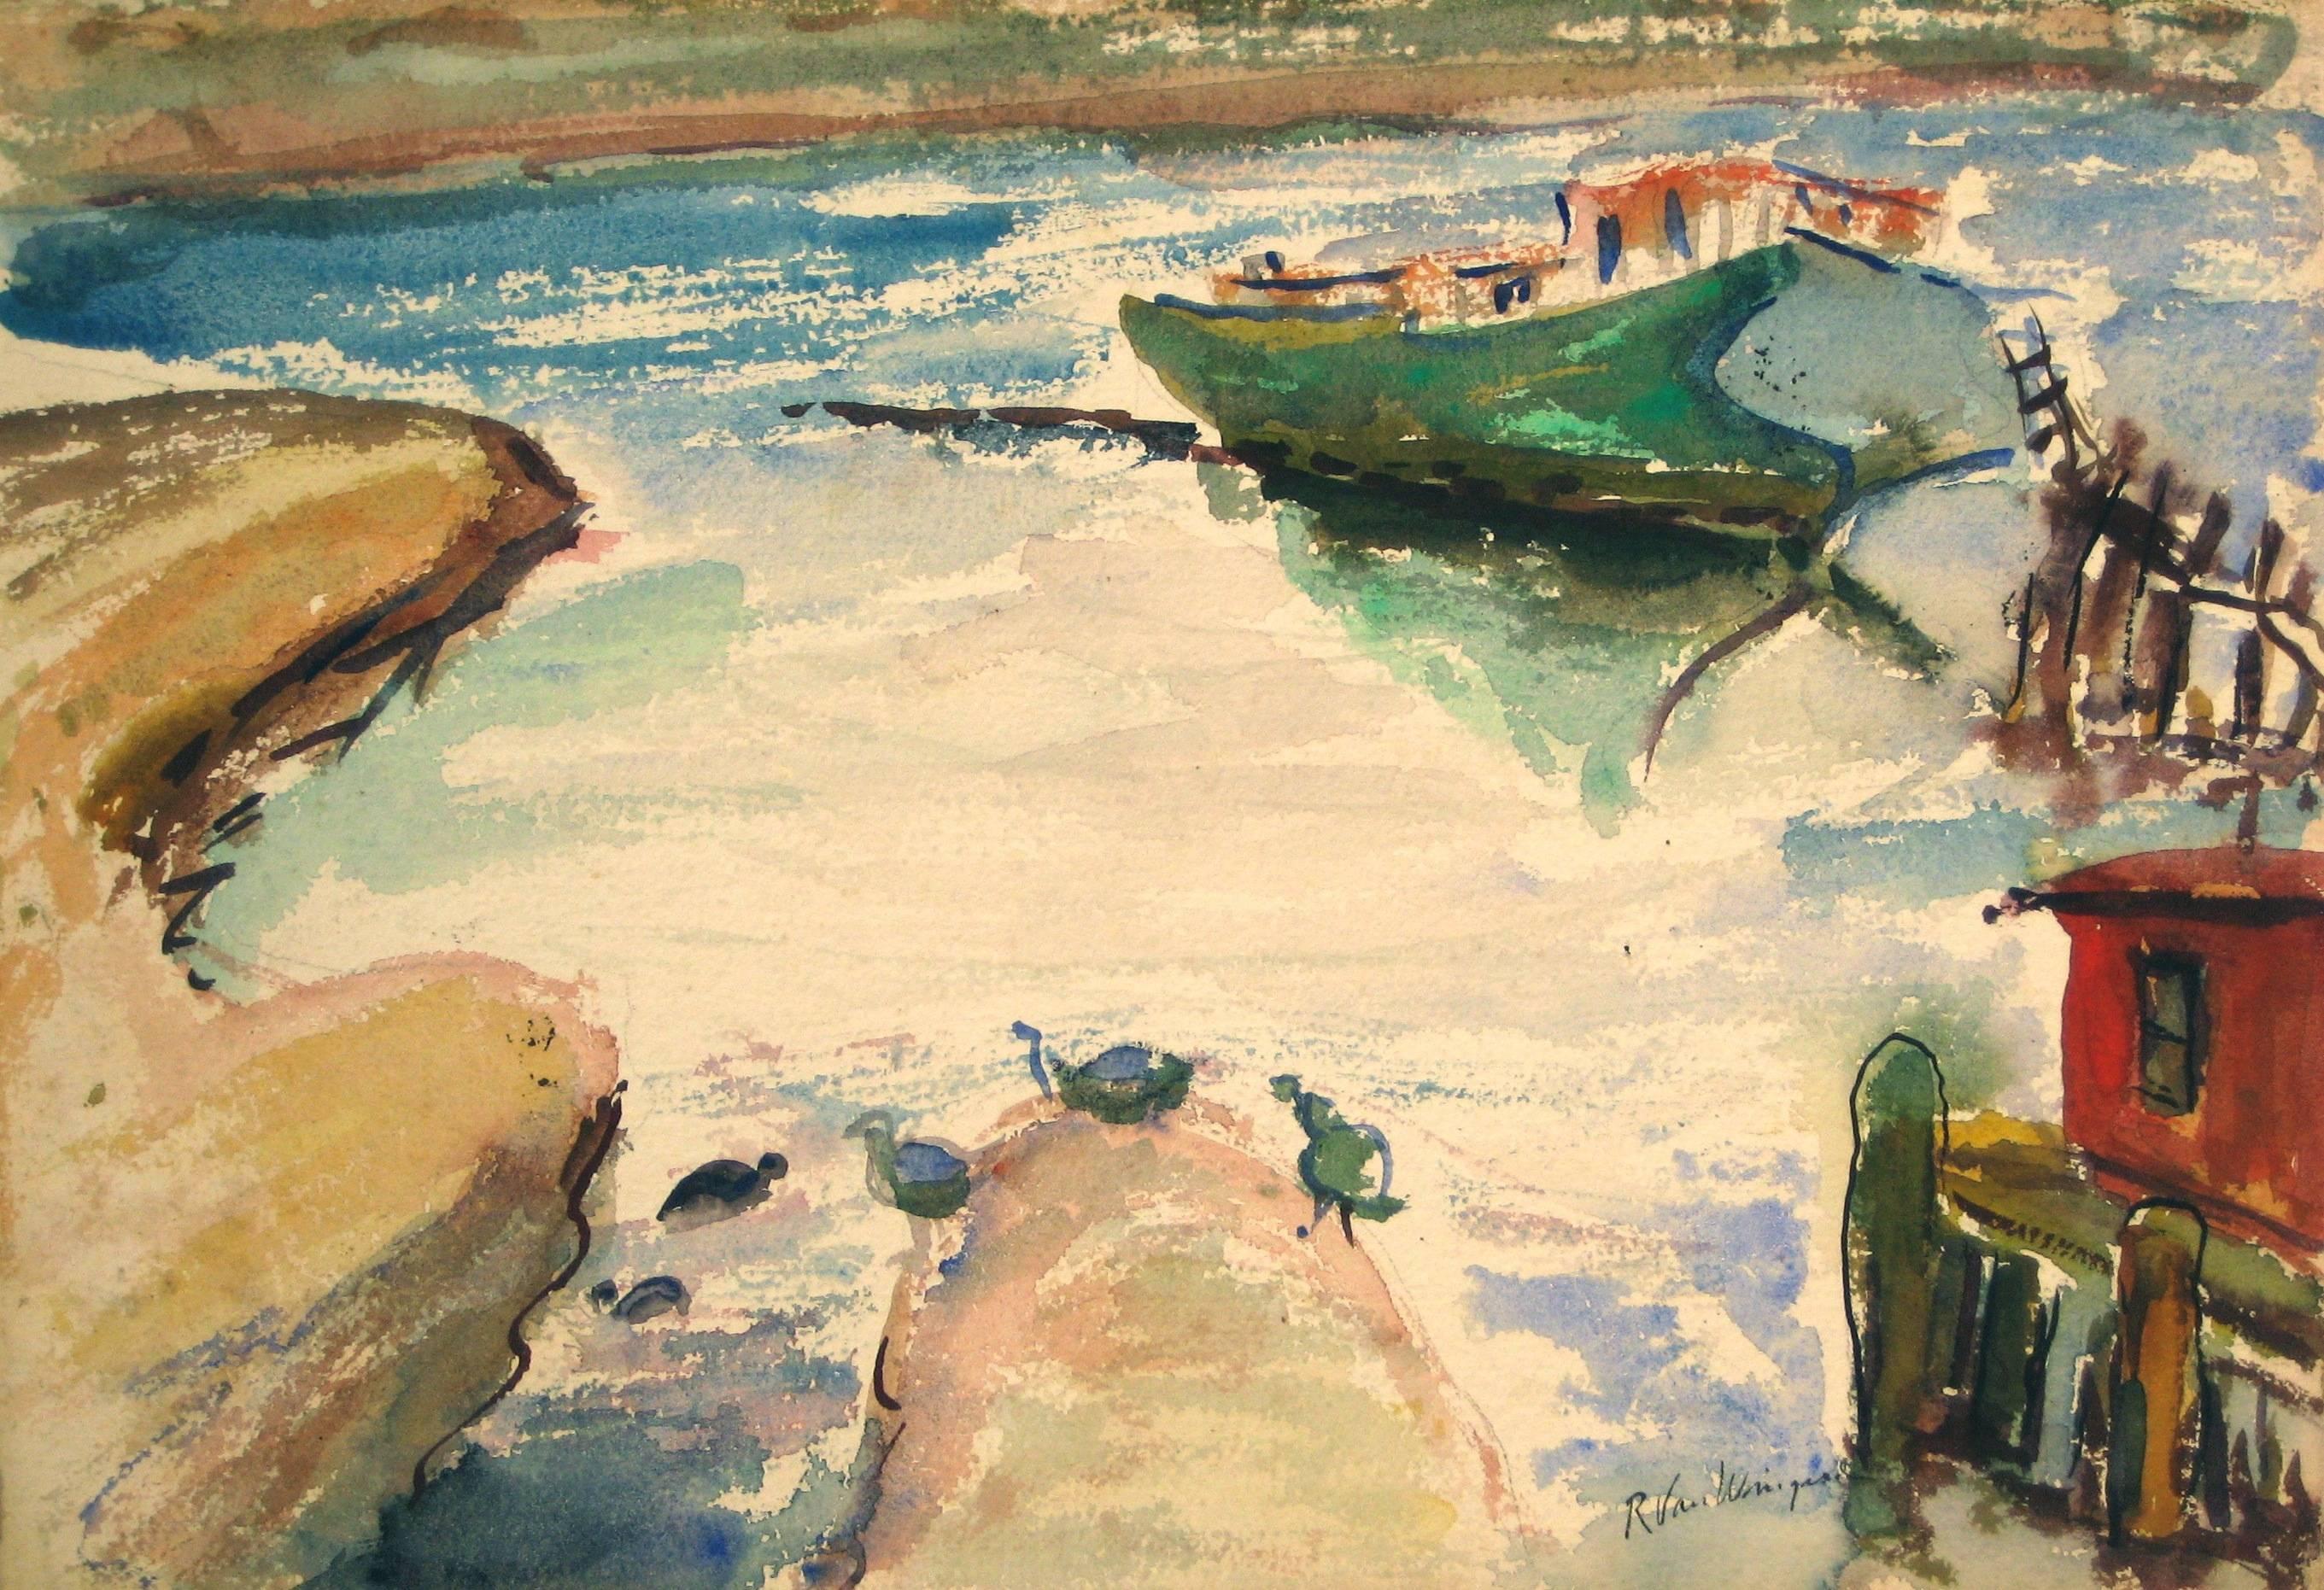 Richard Van Wingerden Landscape Art - Bay Area Harbor, Watercolor Painting, Circa 1950s